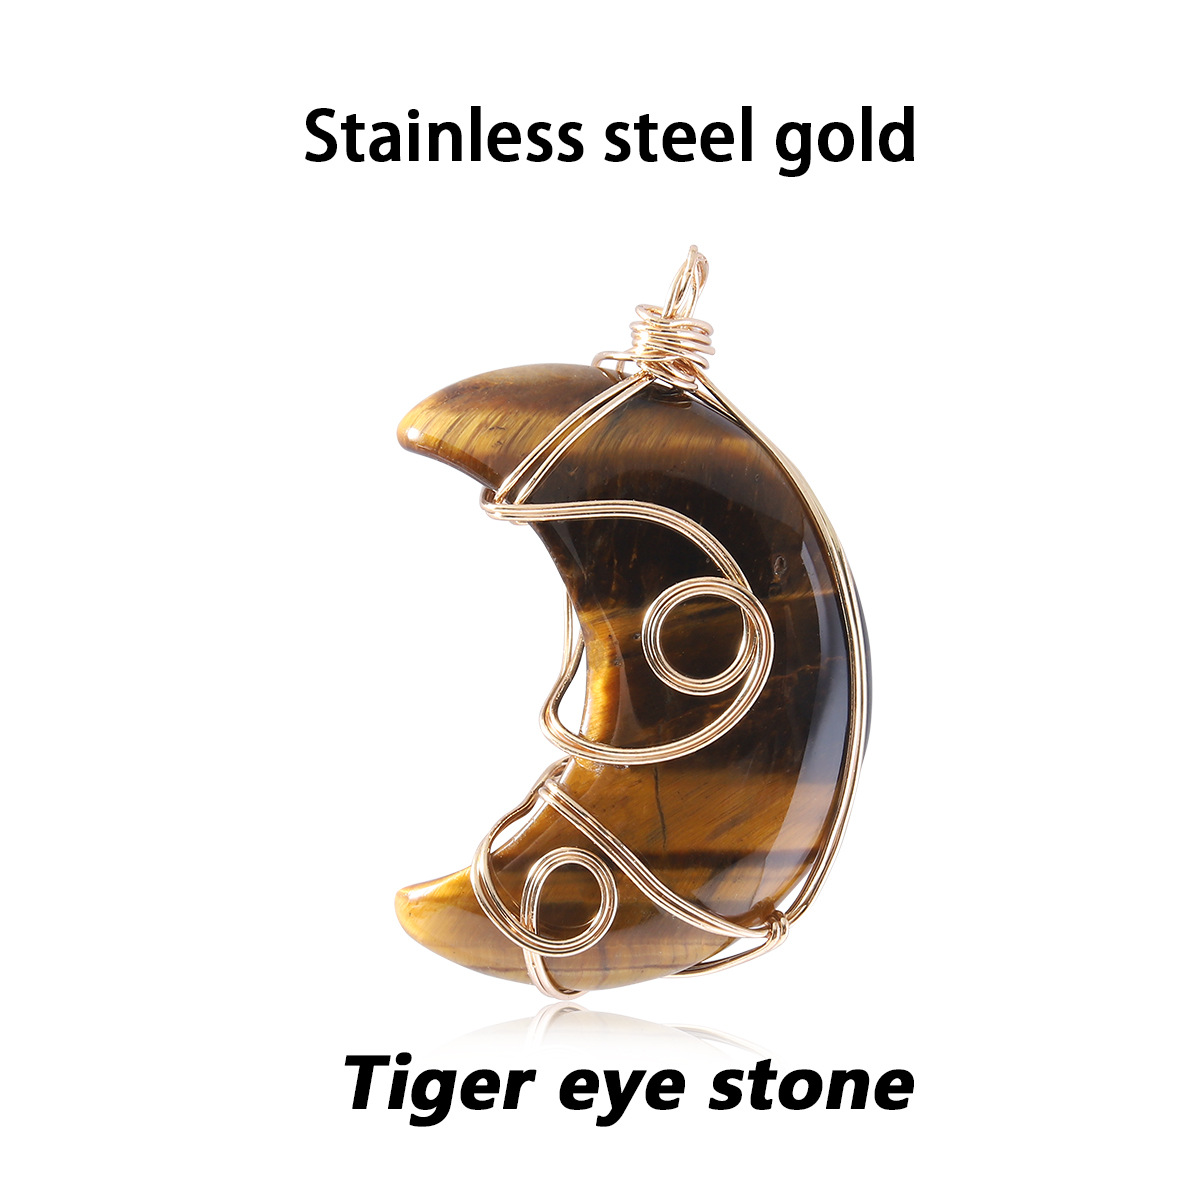 15 tiger eye gold